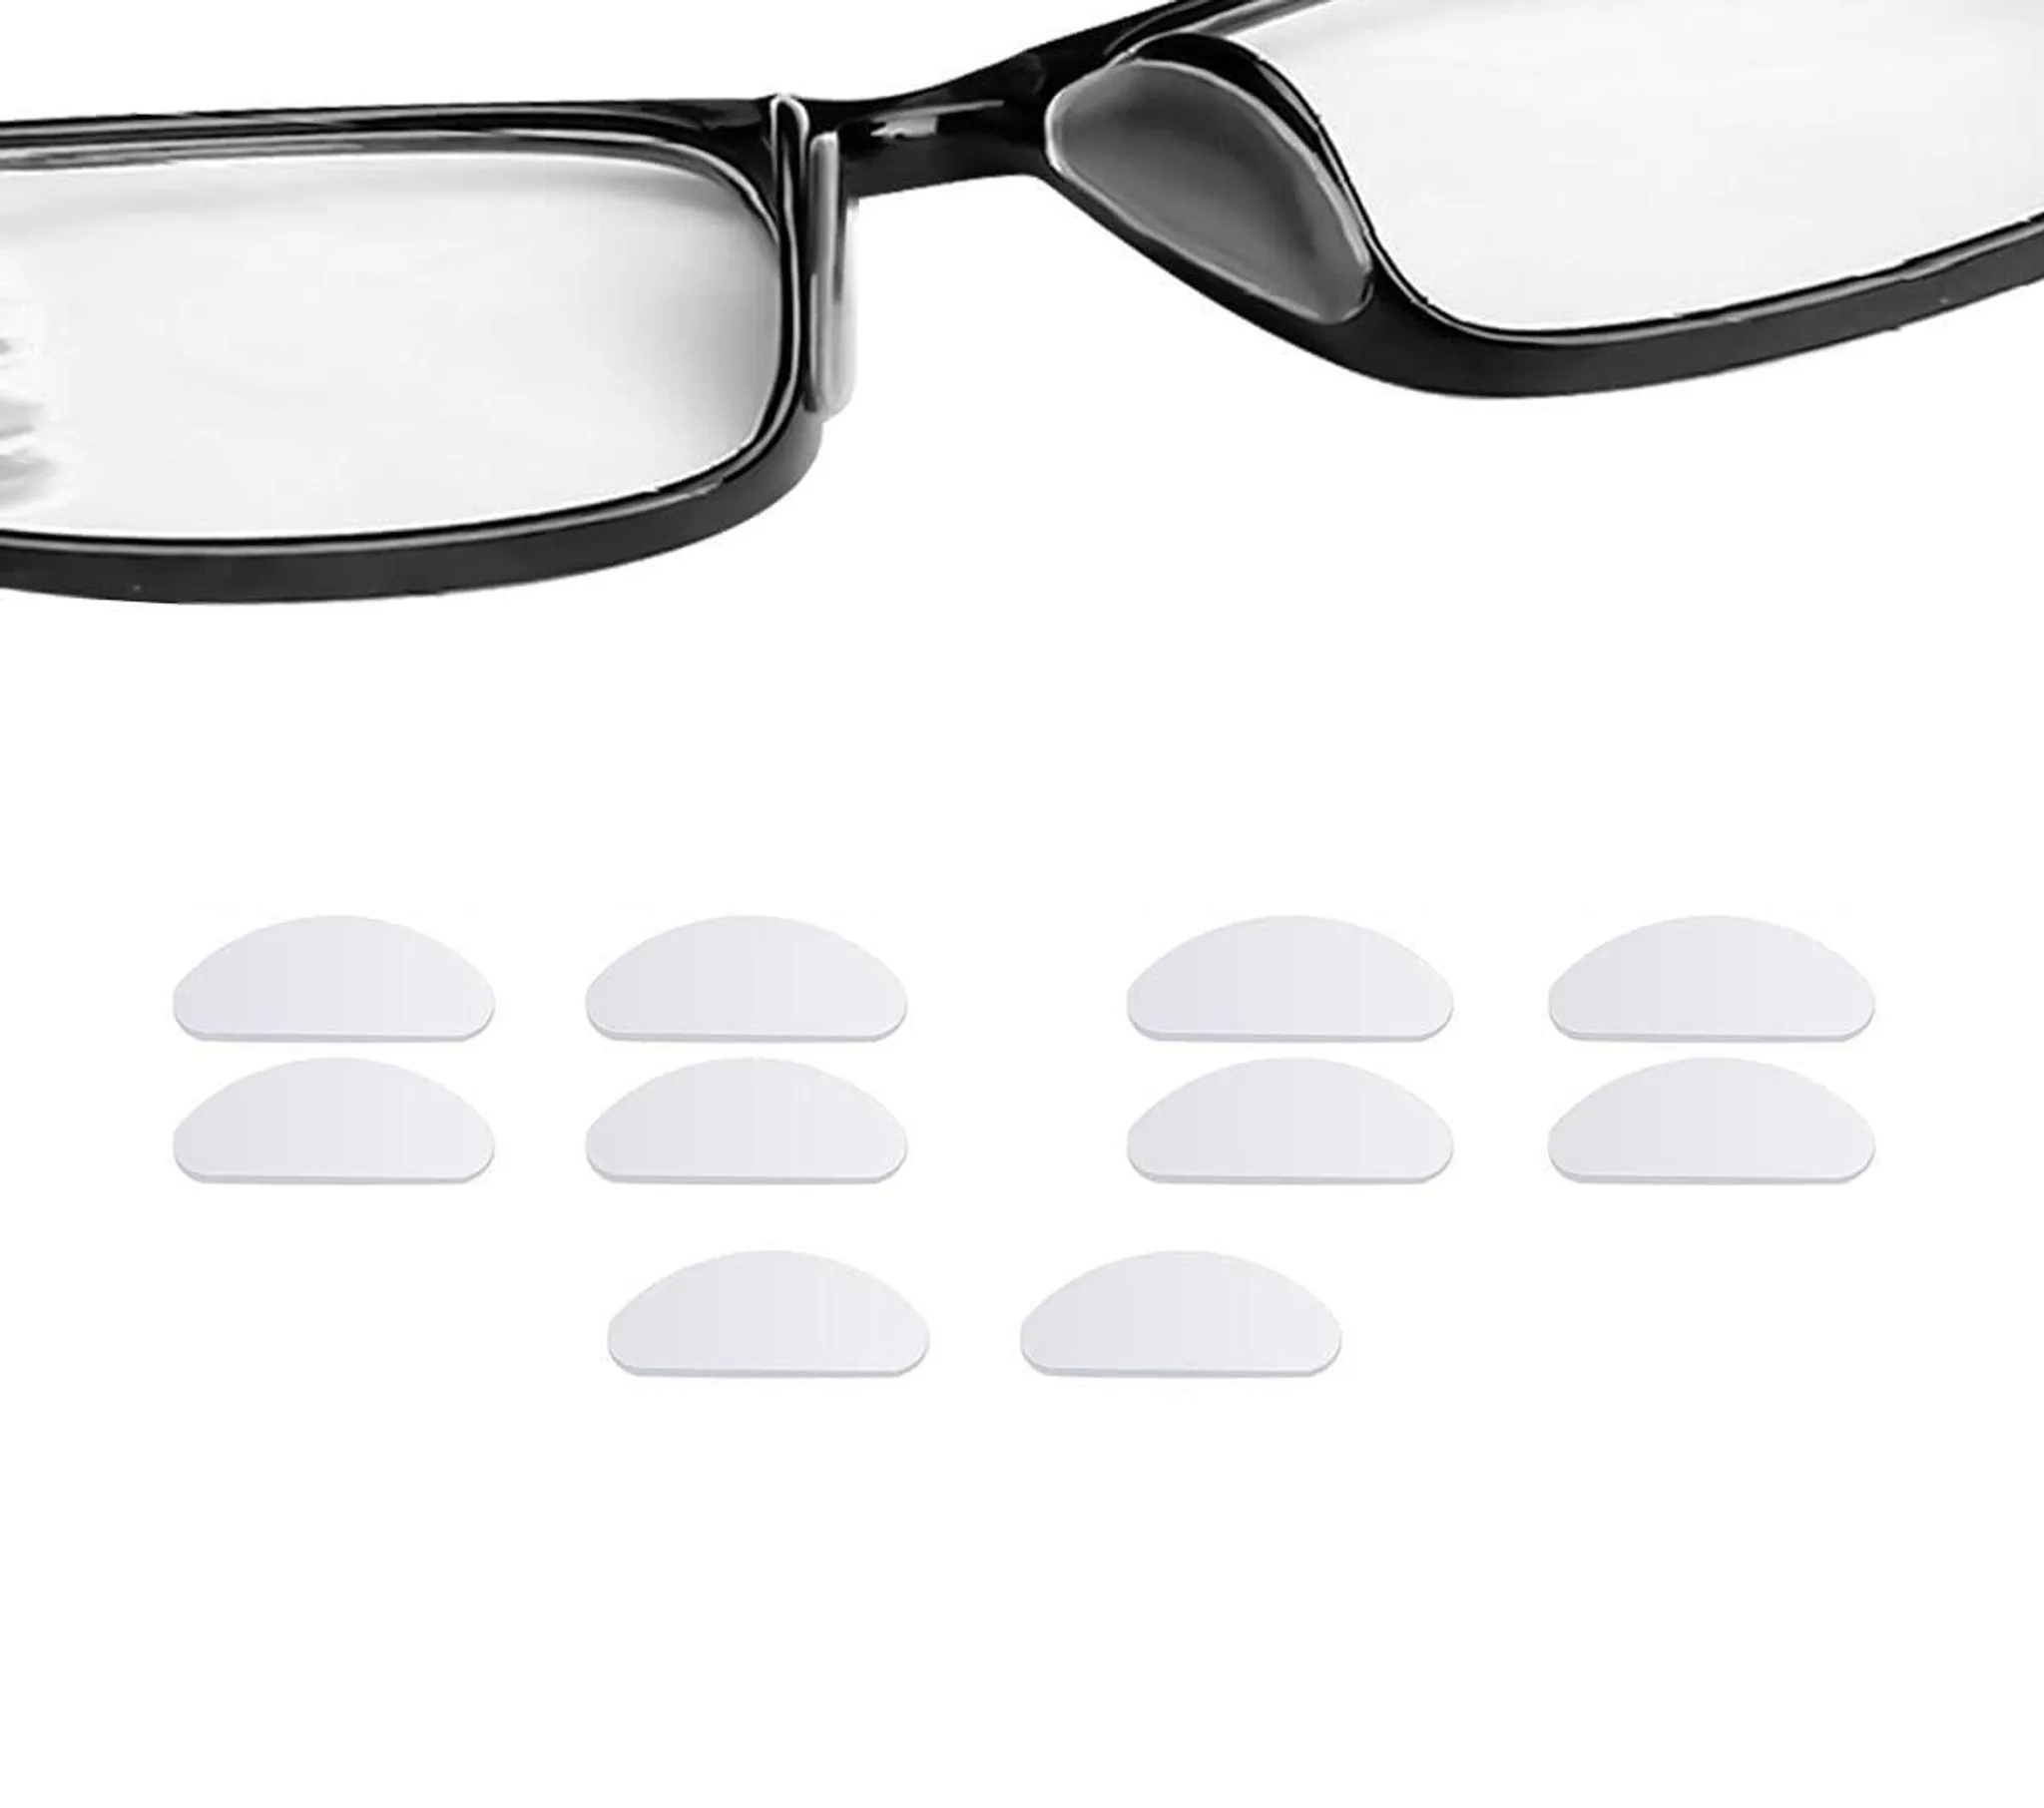 1 Stück verstellbare elastische Silikon Brillen bänder